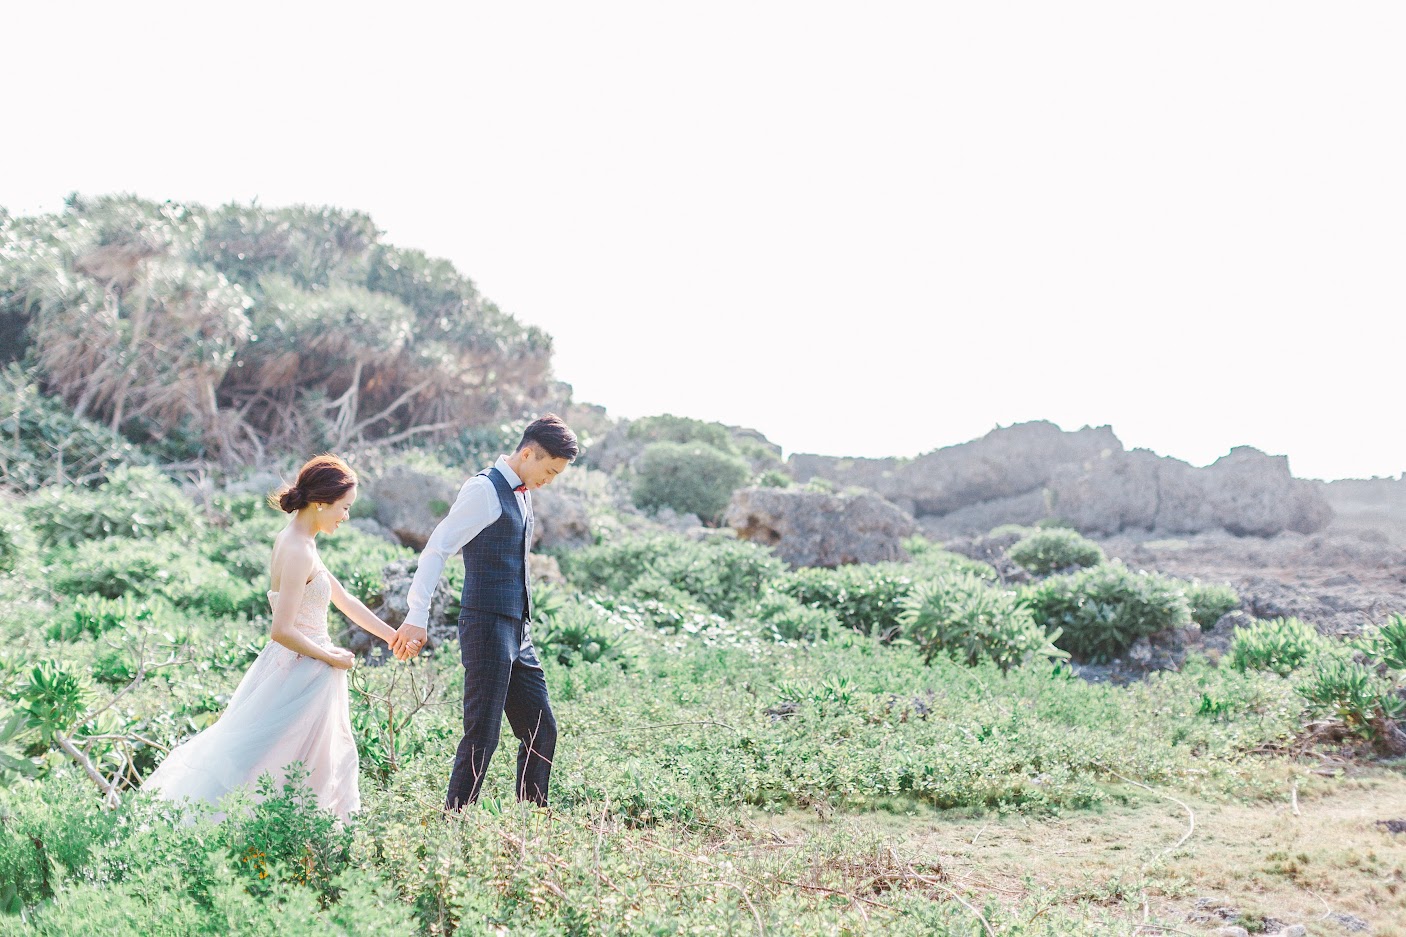 台灣新人到海外的 沖繩美之教會 舉行陽光正好的 海外 美式 婚禮 ,是每位新娘夢寐以求的美式婚禮樣式!